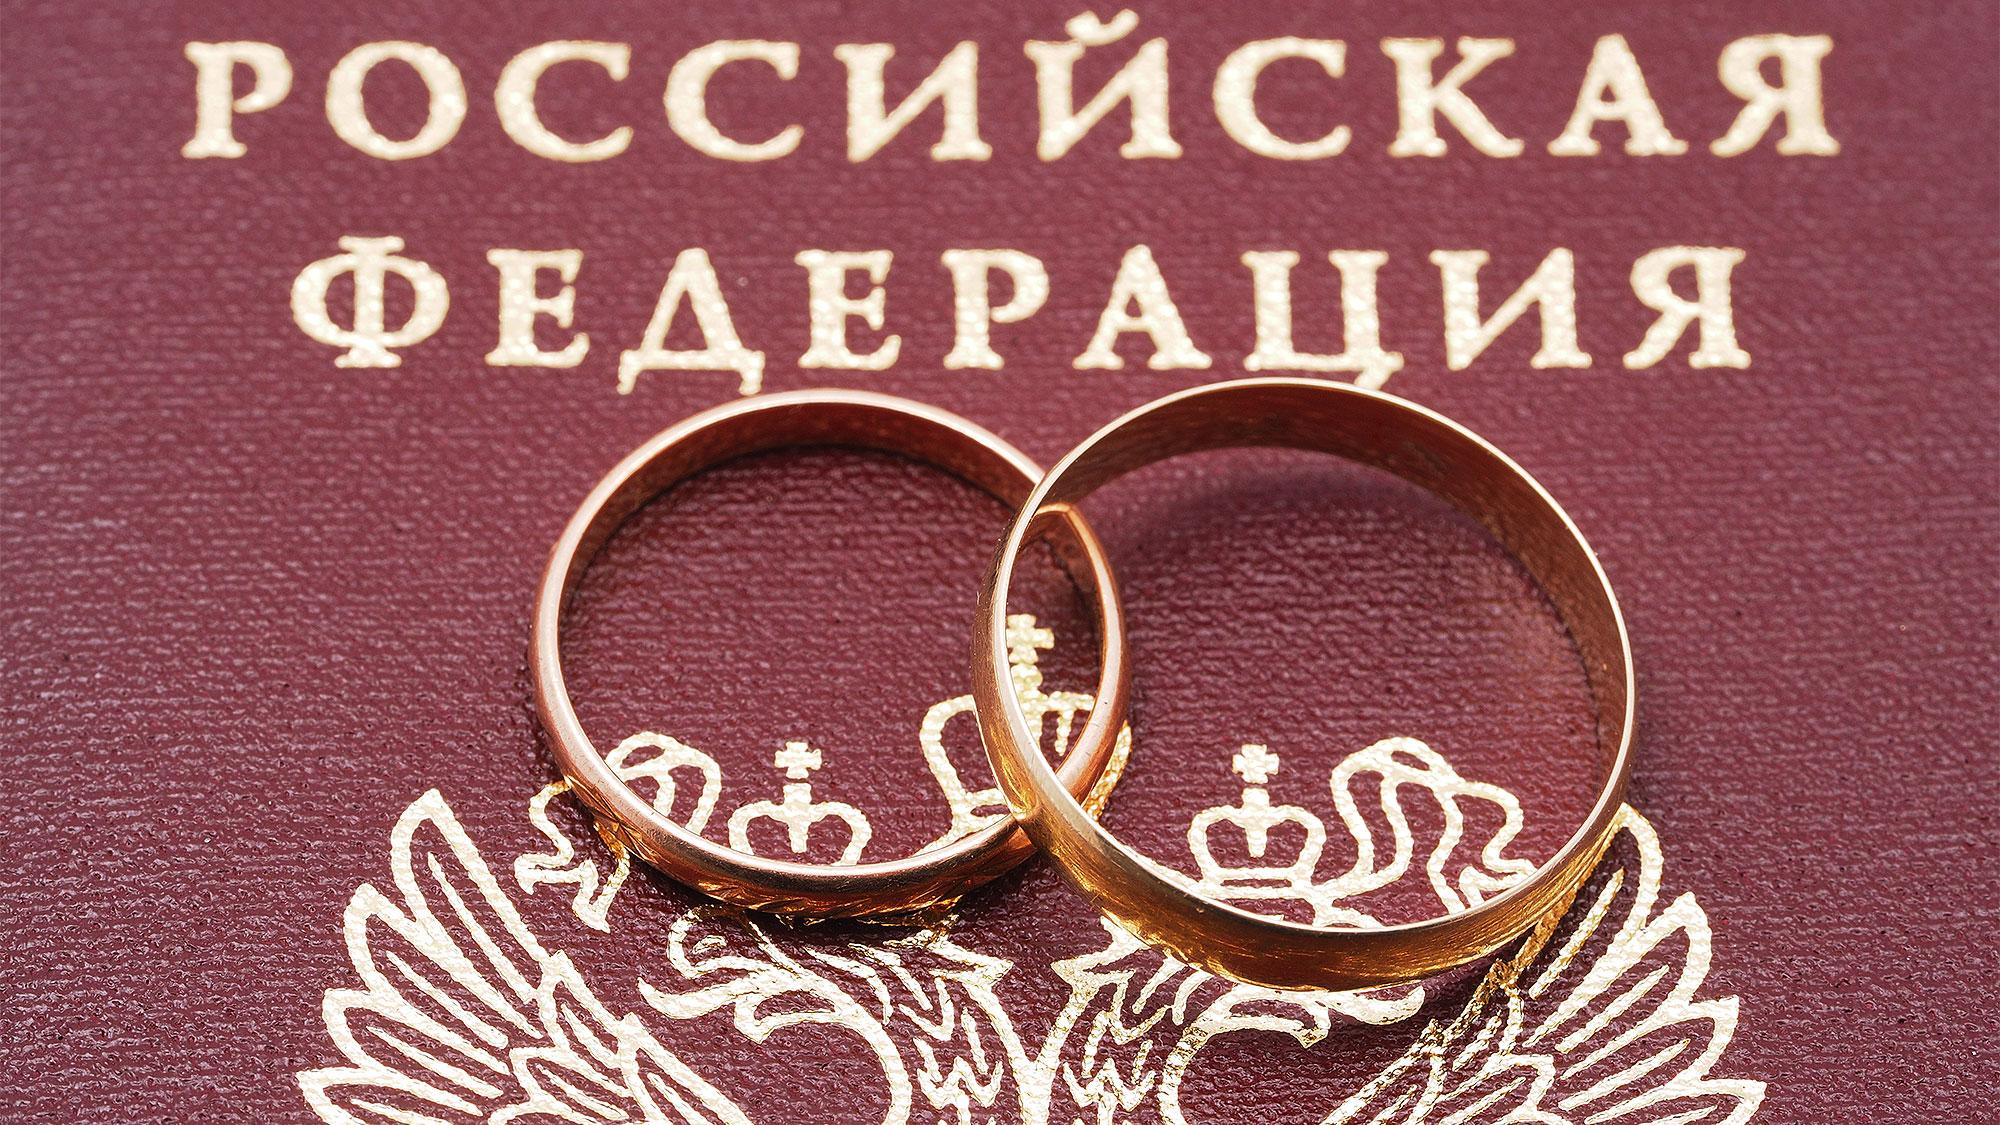 Фото свидетельства о браке и руки с кольцами